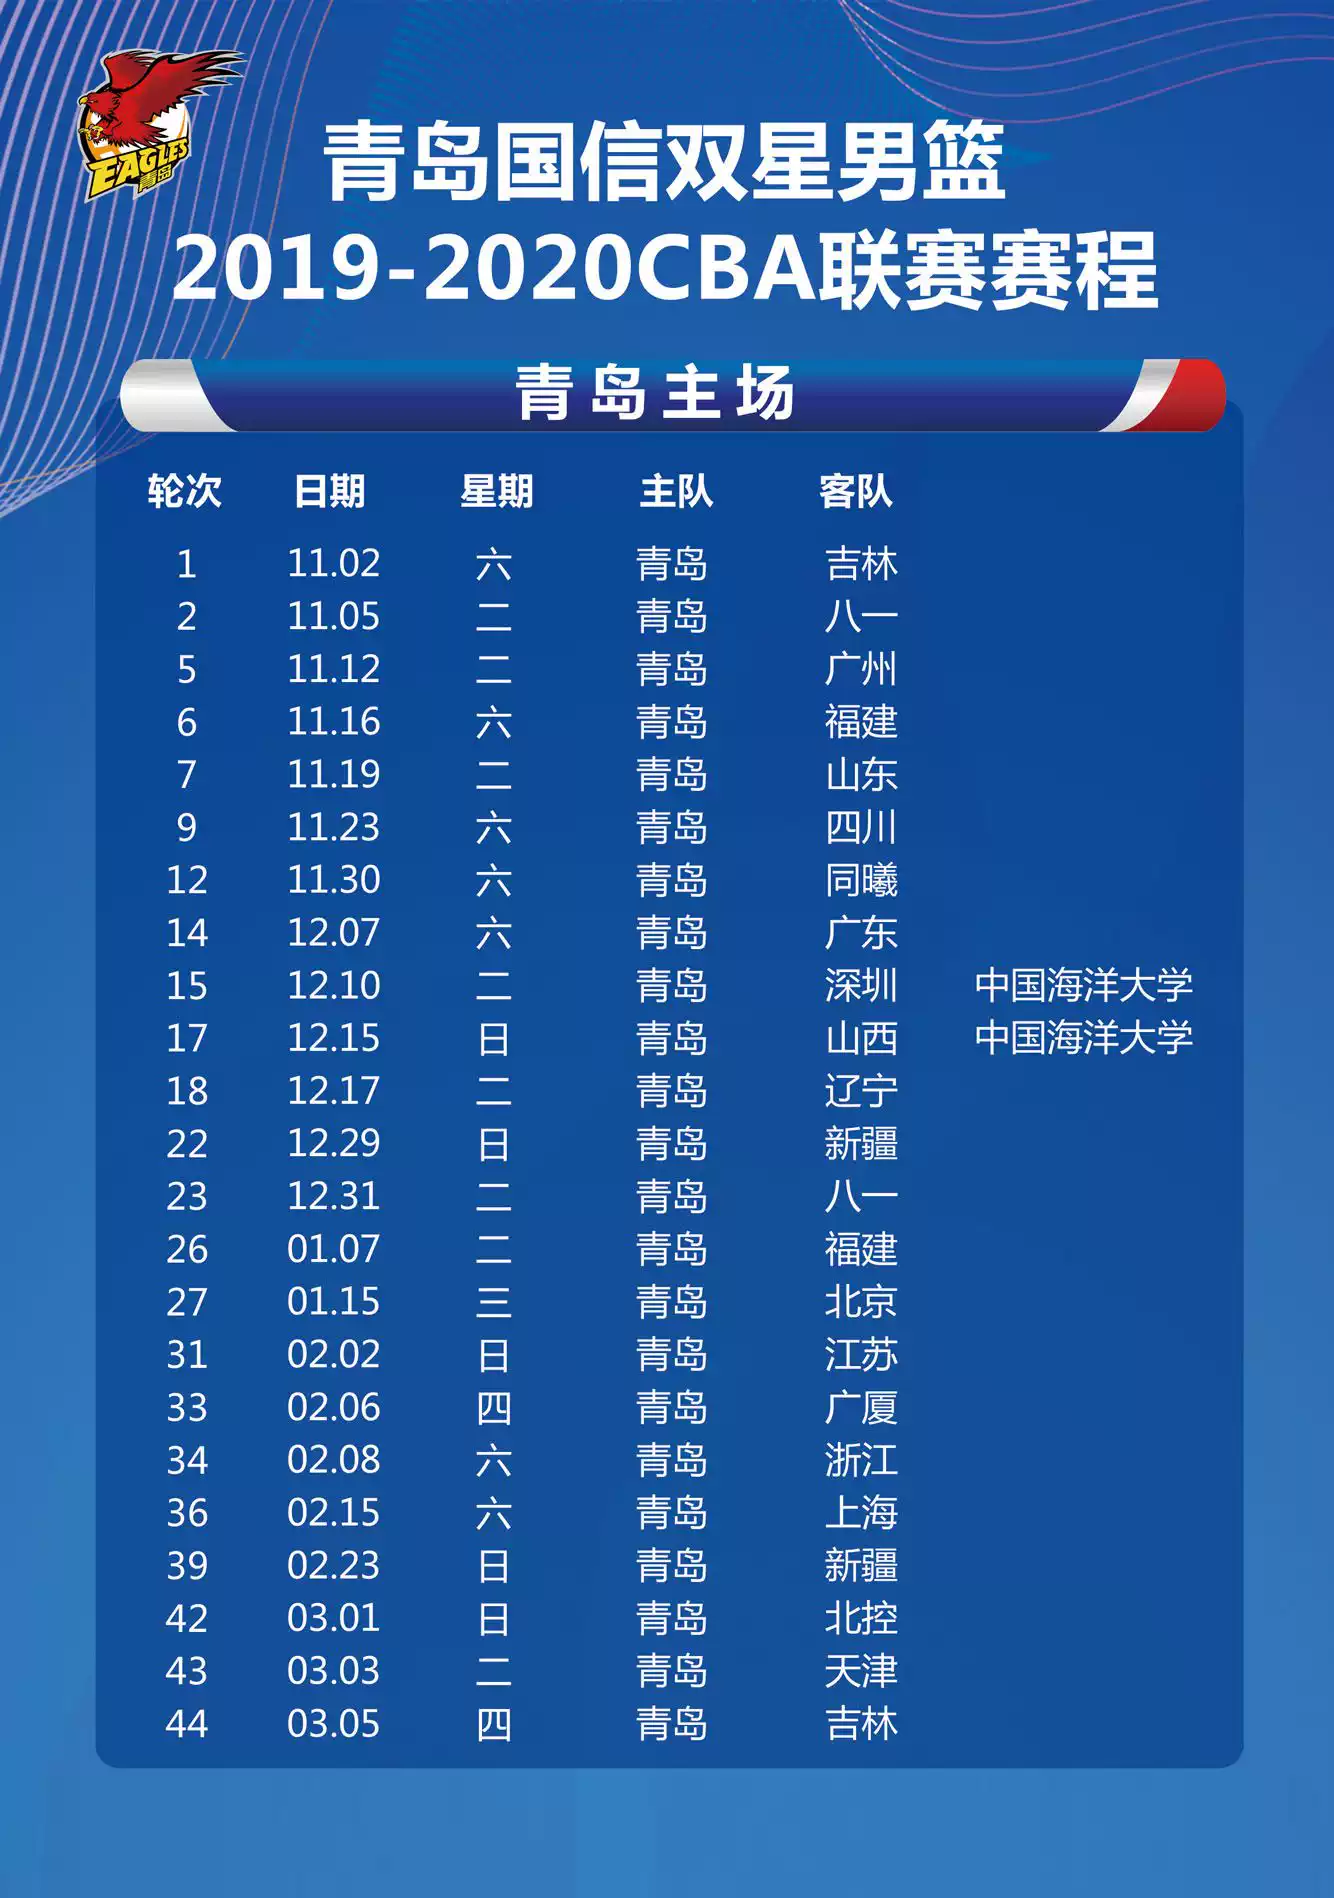 20192020赛季cba常规赛青岛主场比赛赛程表门票及参赛球队名单